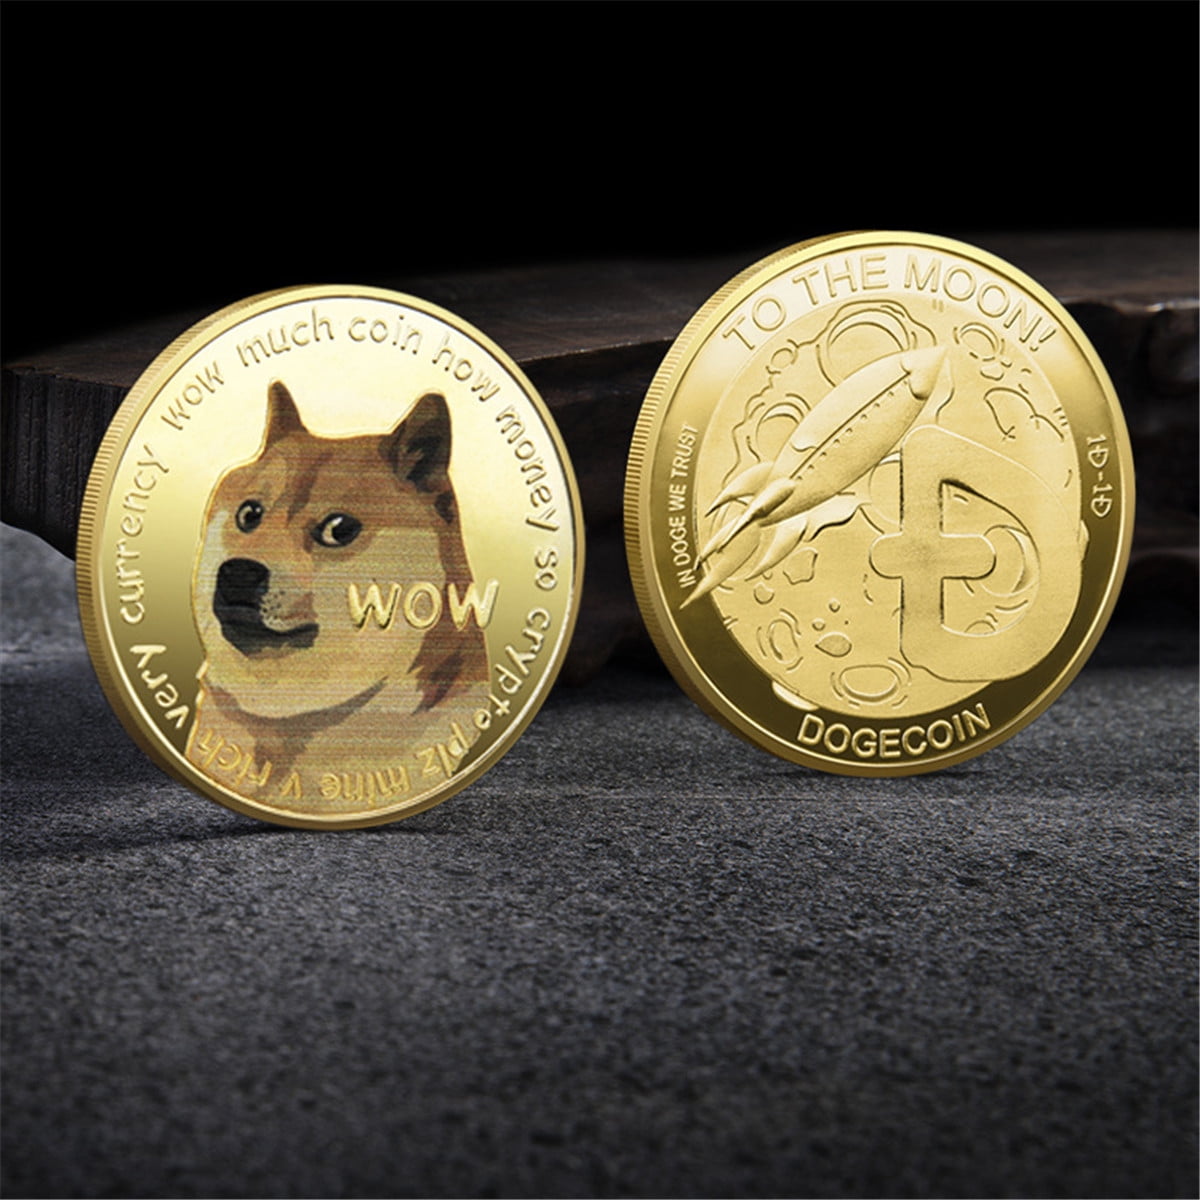 Dogecoin-Doge-Gedenkrunde Sammlermünzen XIAOLONGWANG Gold-Dogecoin-Münzen Gedenkmünze 2021 New Collectors Vergoldete Doge-Münze zweiseitig geprägte Gedenkmünze